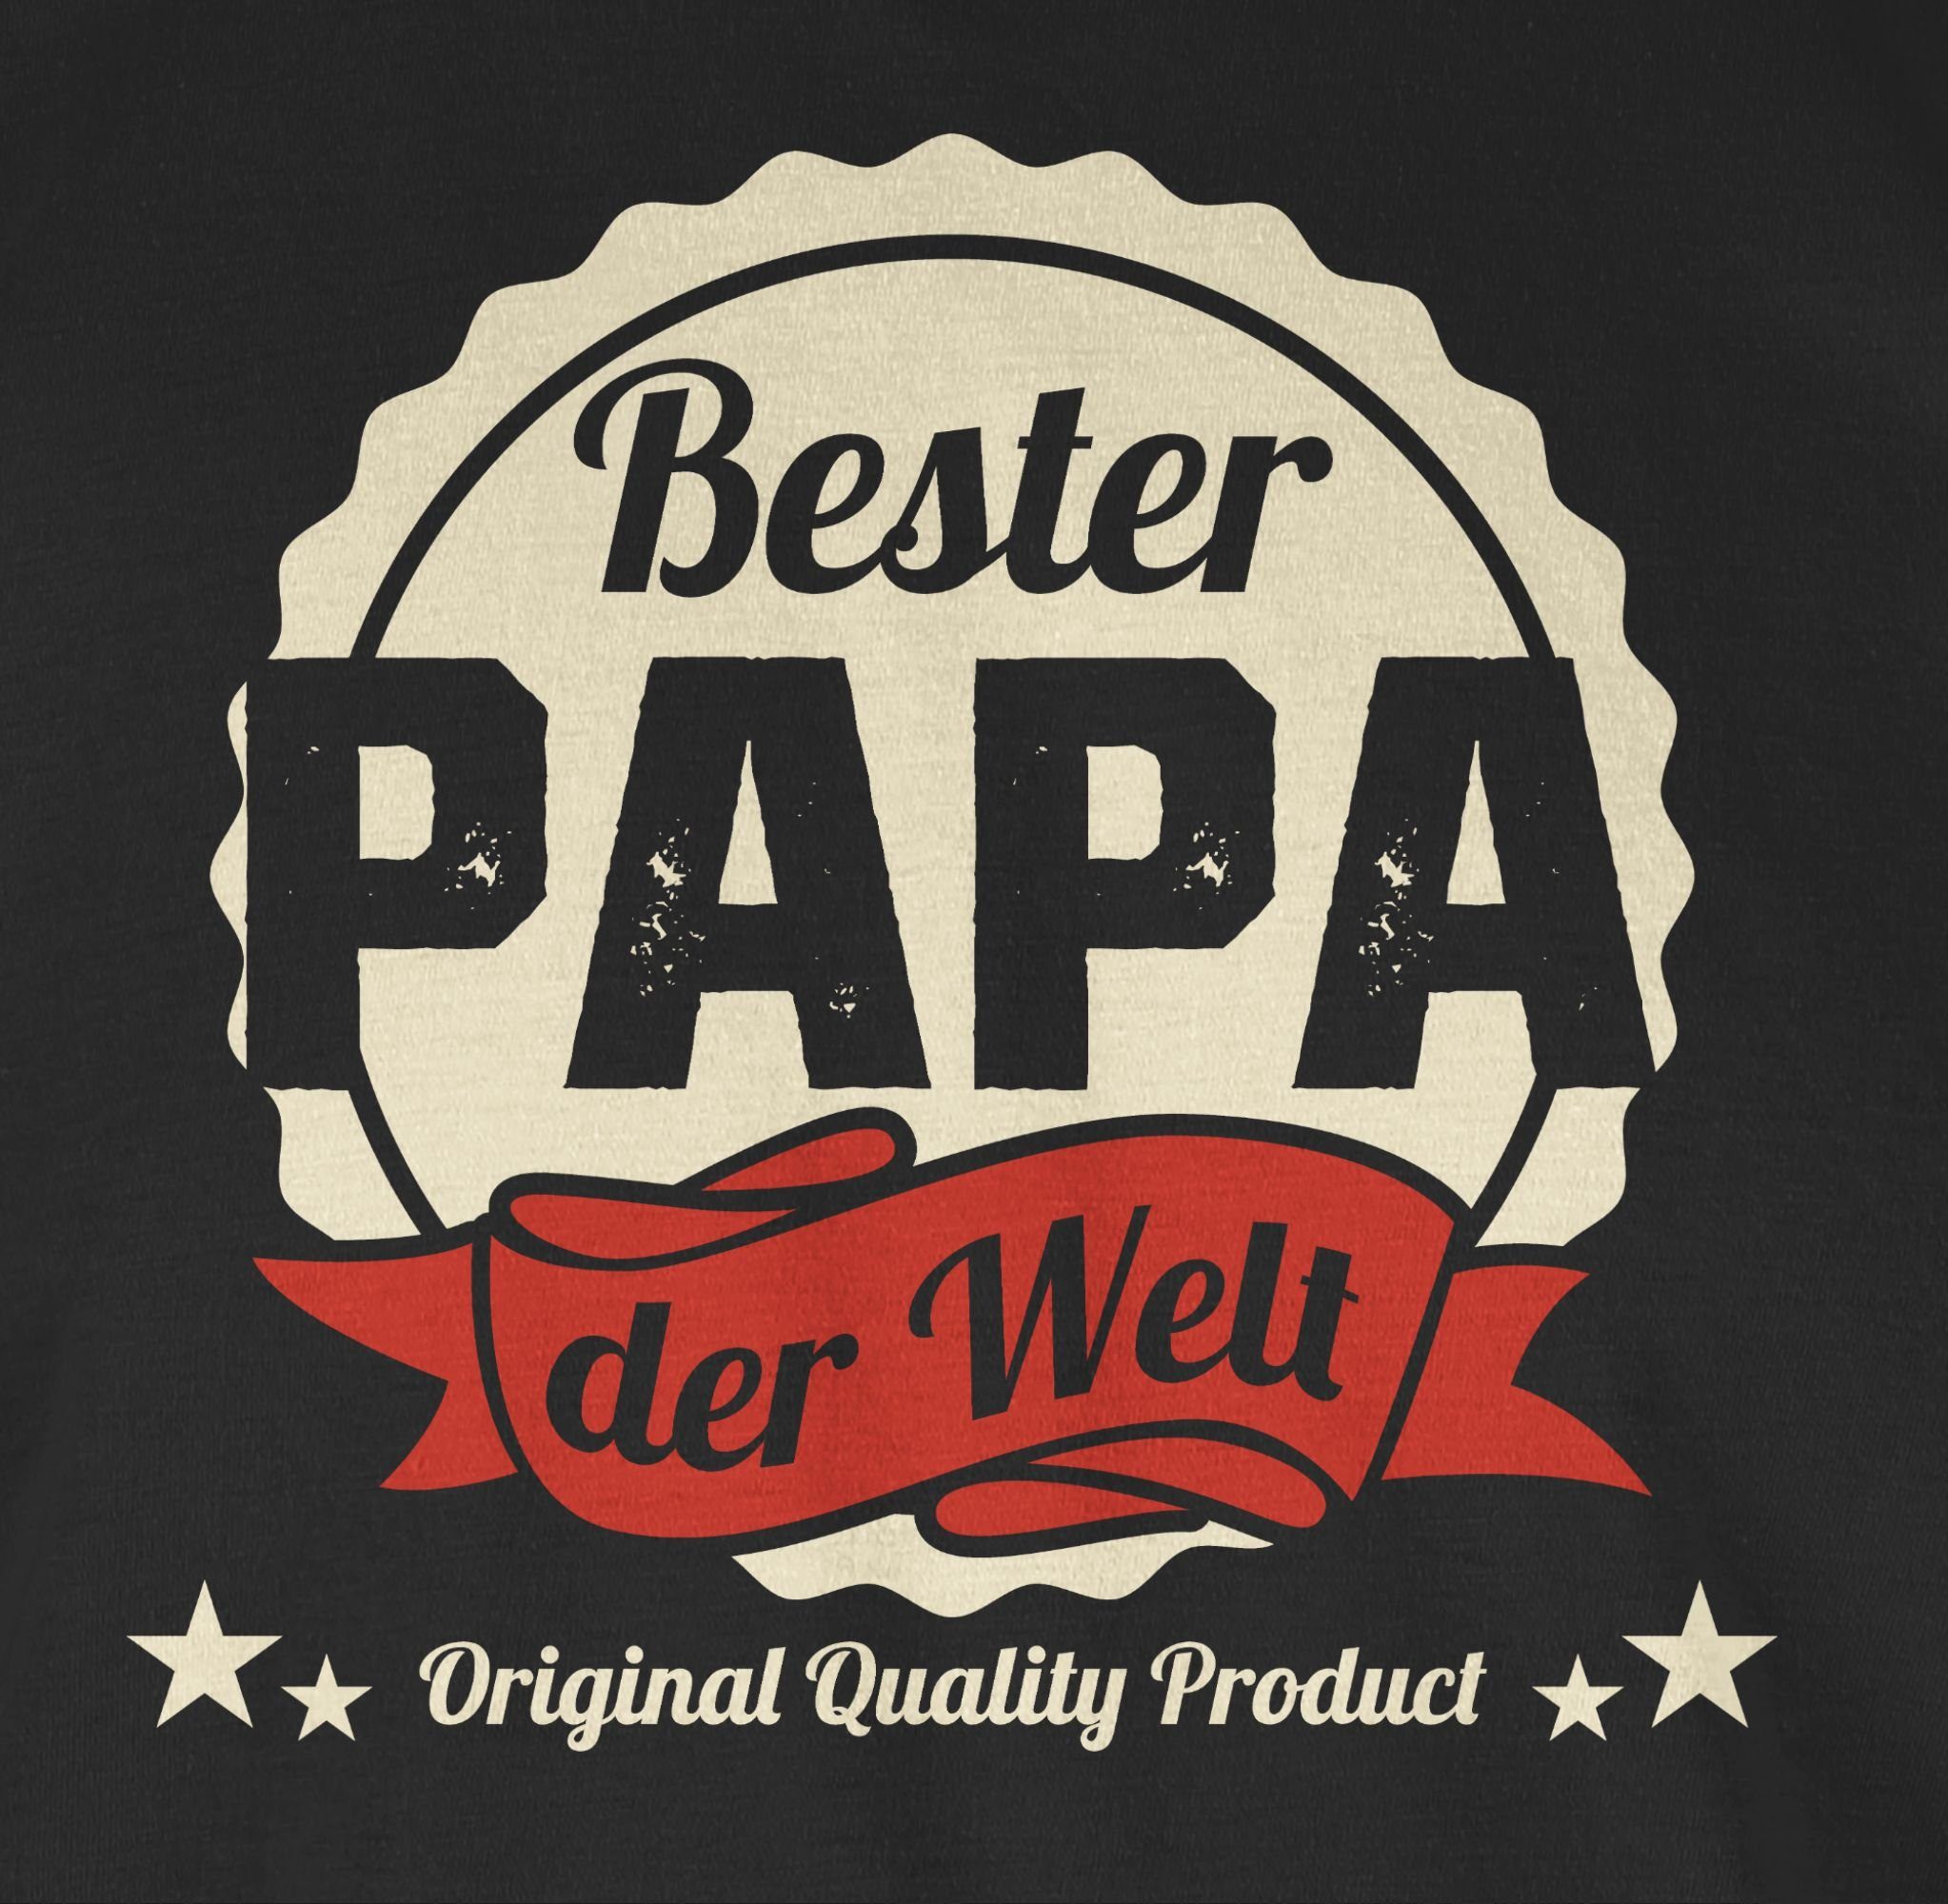 02 Vatertag Schwarz Bester Geschenk für T-Shirt Papa Papa Welt der Shirtracer